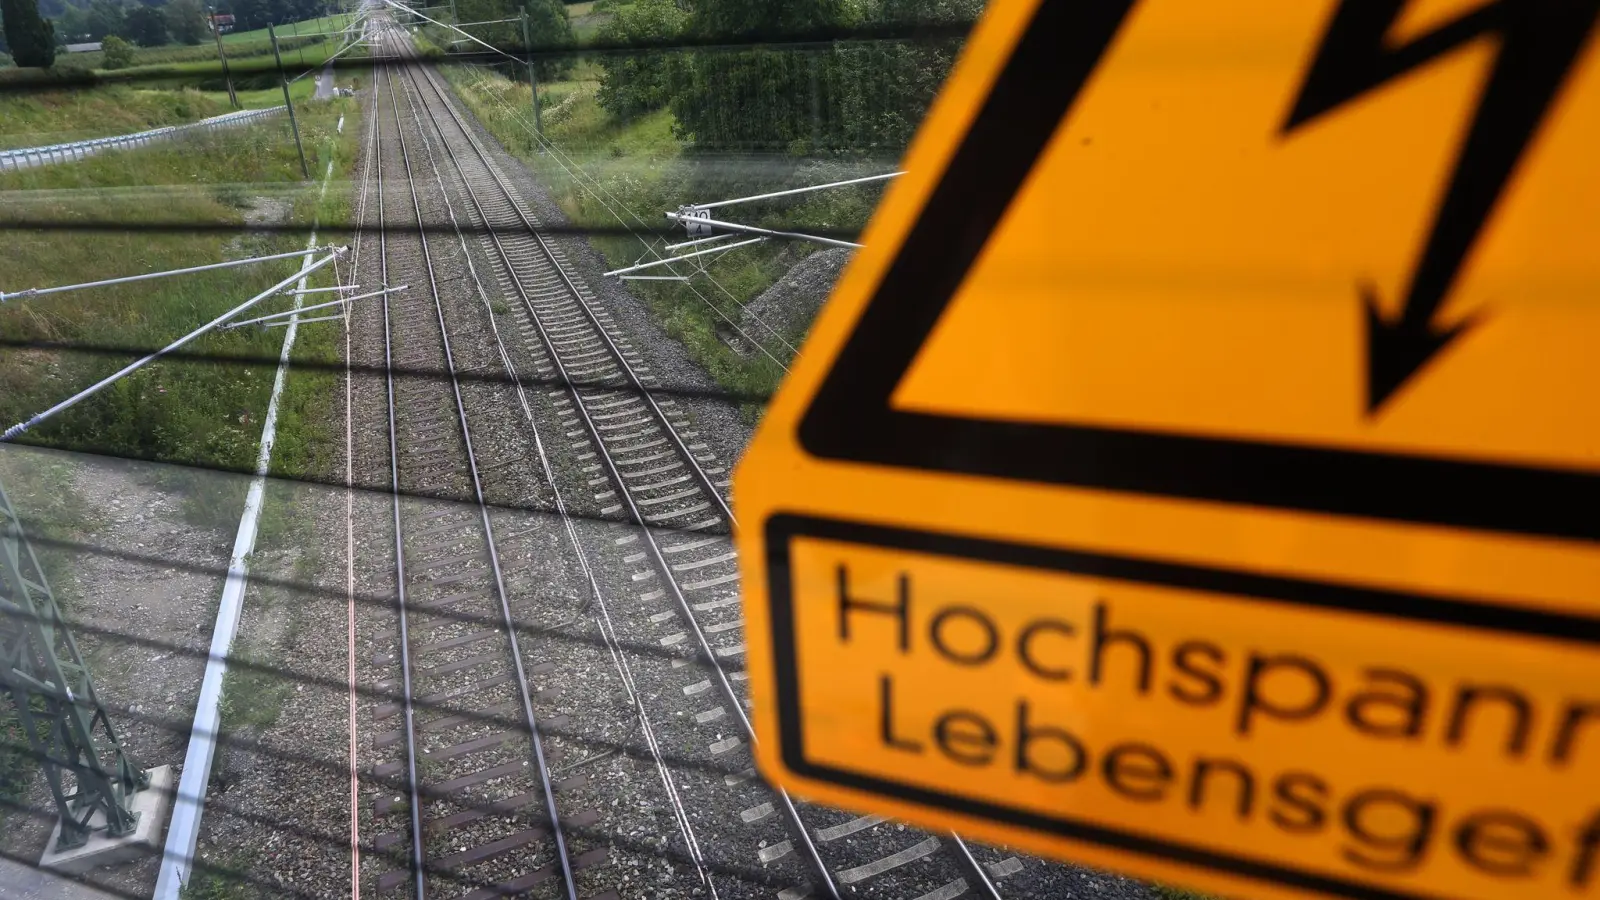 Bahn und Bundespolizei warnen immer wieder vor der Gefahr, Bahnanlagen zu betreten. (Foto: Karl-Josef Hildenbrand/dpa)